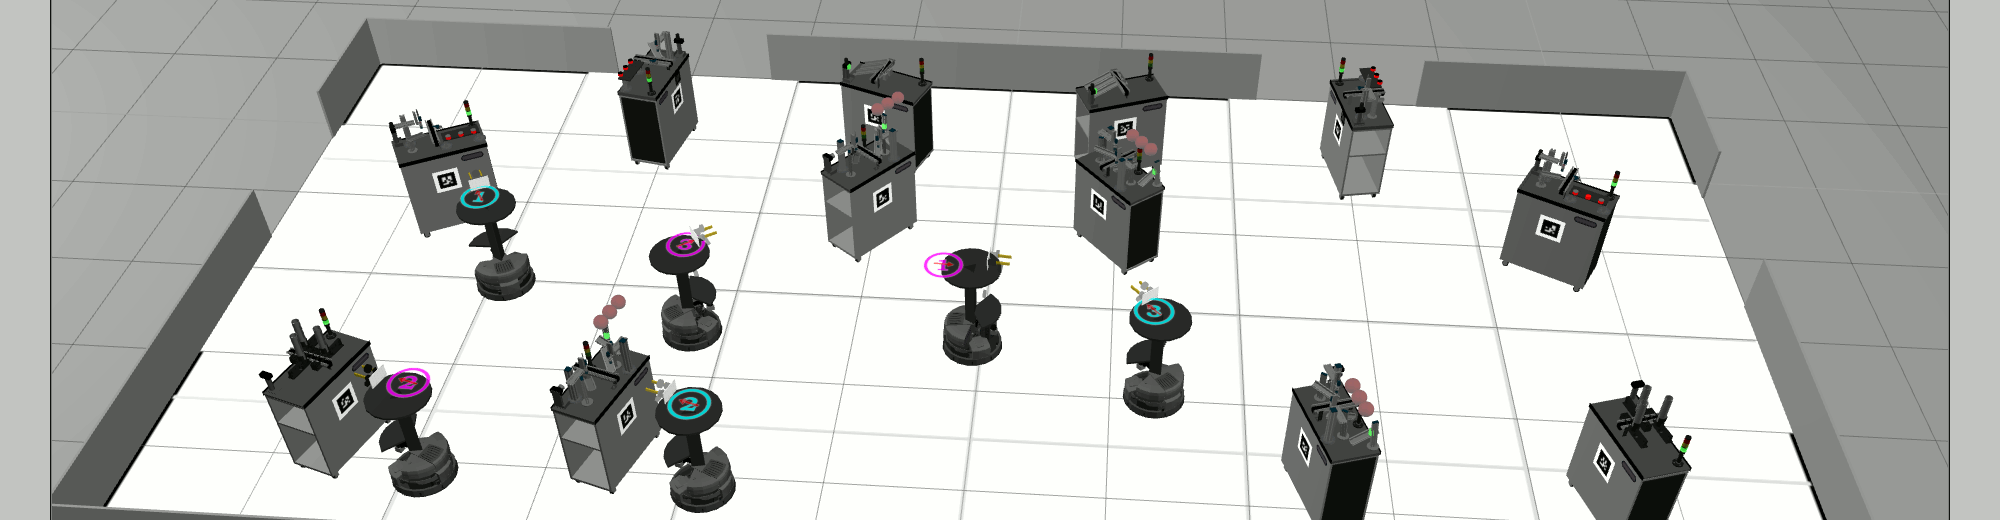 RoboCup Logistics League Simulation